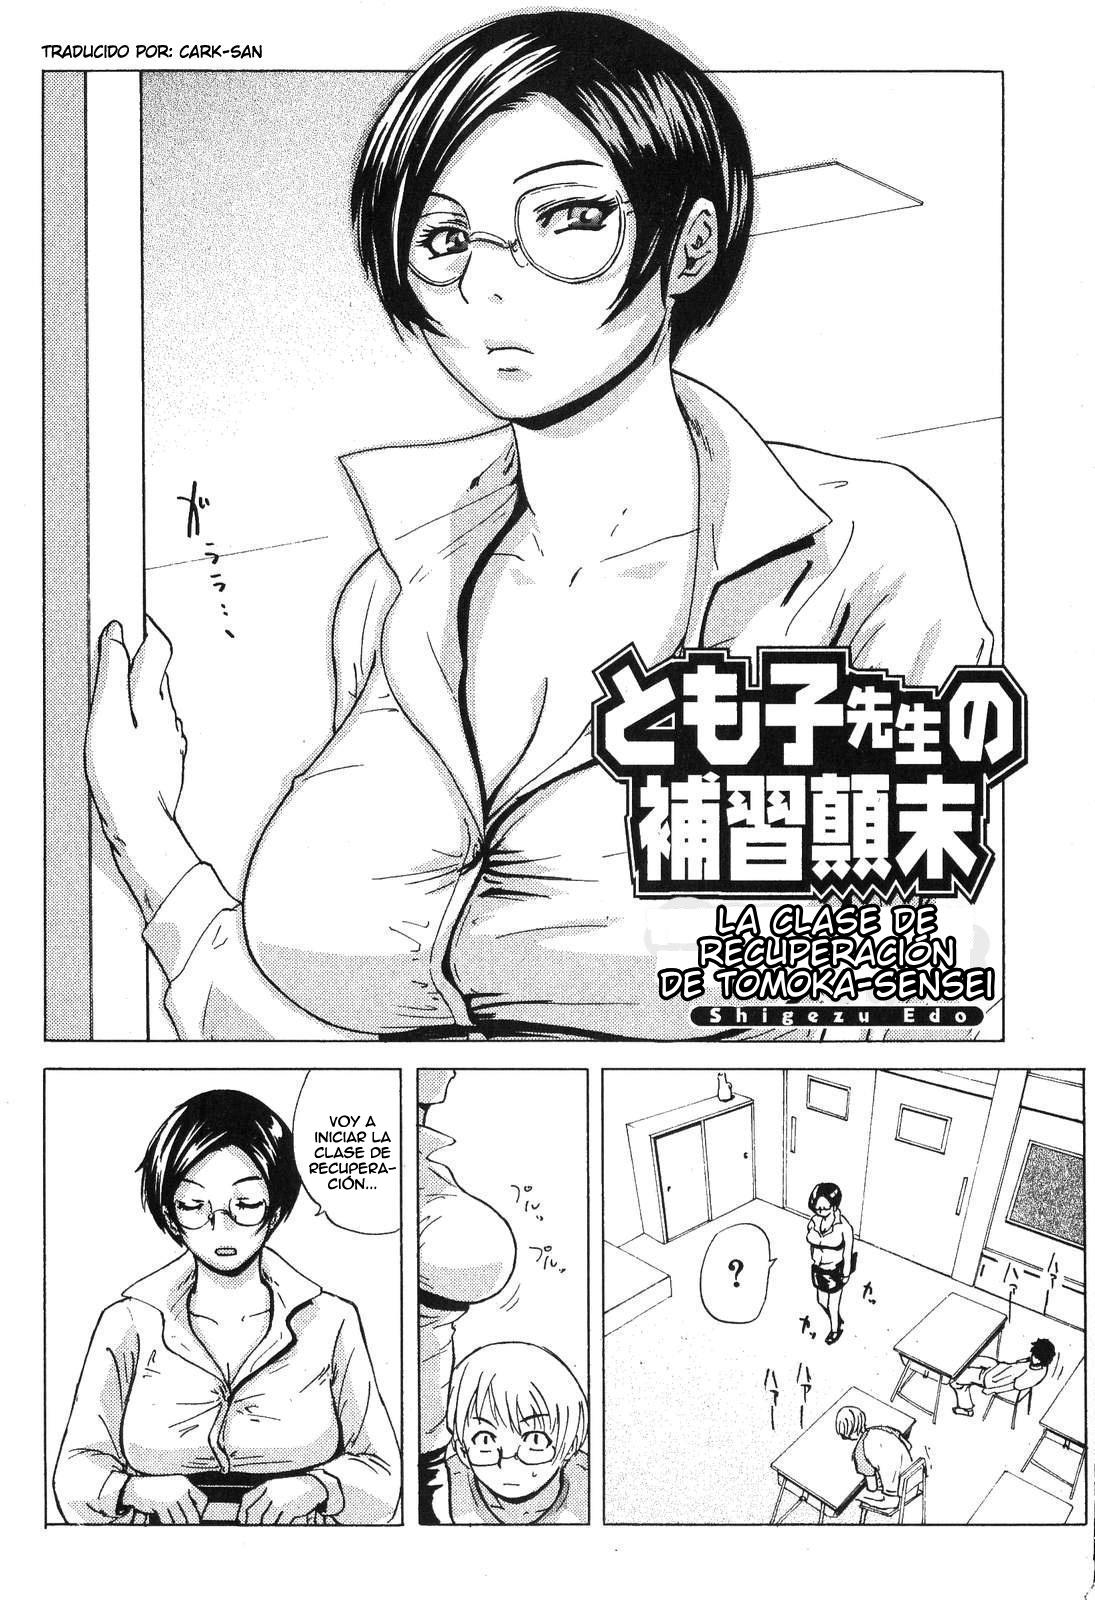 La clase de recuperación de Tomoko-sensei Chapter-1 - 1